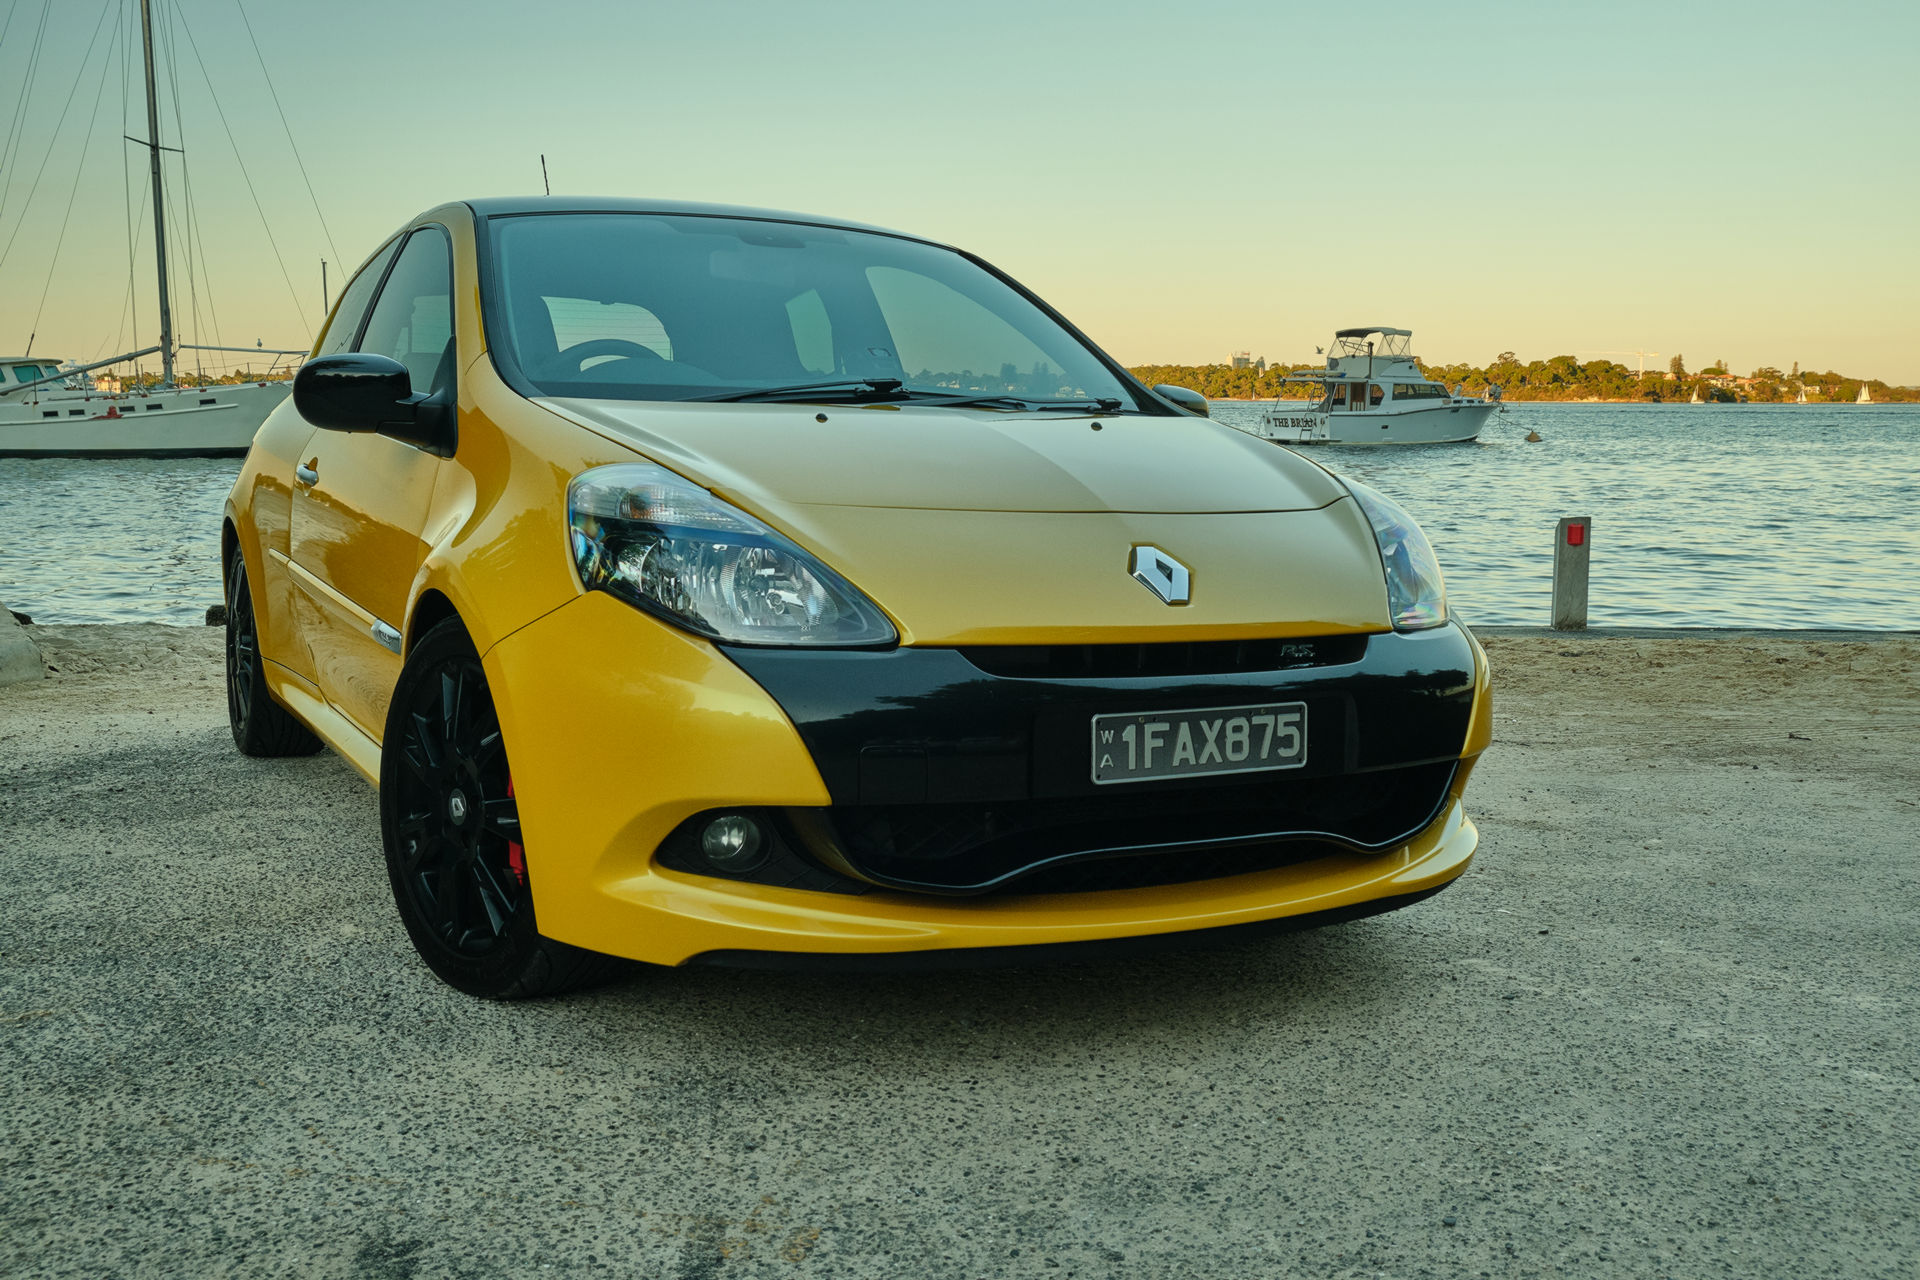 France September 2011: Renault Clio & Megane III at highest ever